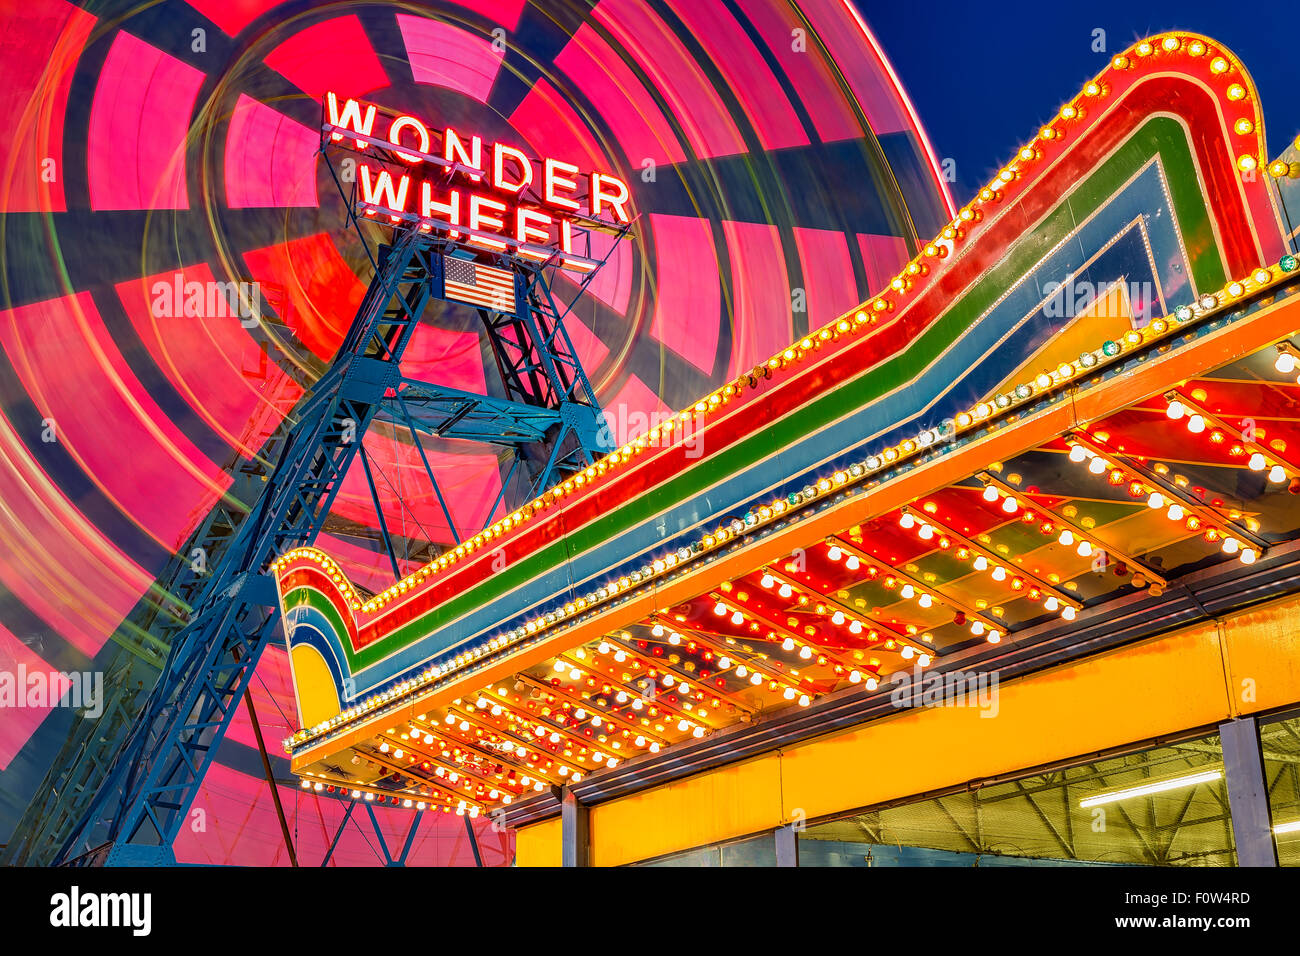 Rueda de maravilla en Coney Island - excéntrico coloridos noria en movimiento y el parque de diversiones iluminada marquesina en el famoso monumento deno's Wonder rueda en el parque de diversiones de Coney Island, en Brooklyn, Nueva York. Foto de stock